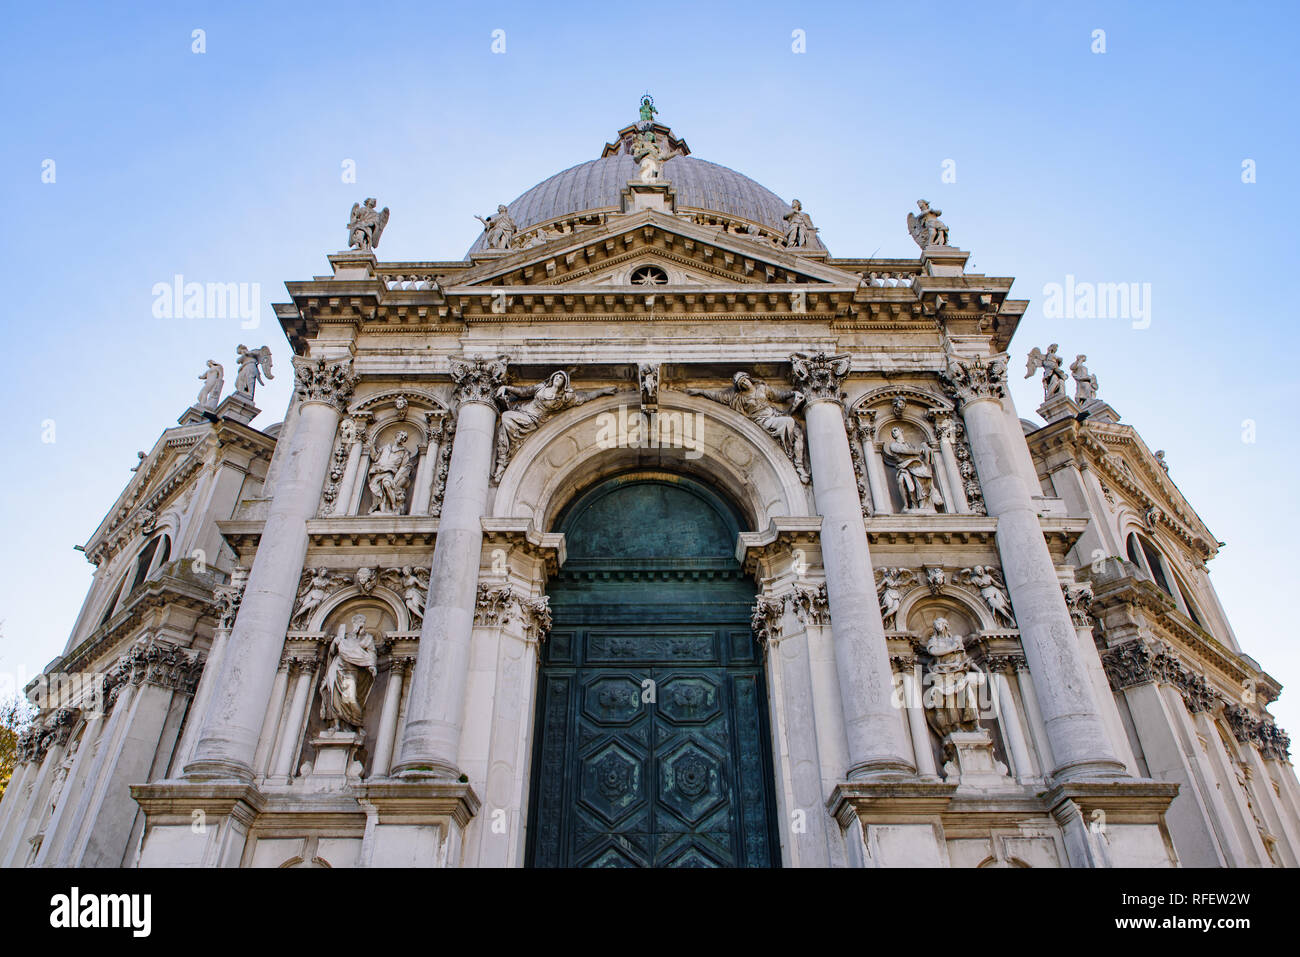 Santa Maria della Salute (Saint Mary of Health), a Catholic church in Venice, Italy Stock Photo